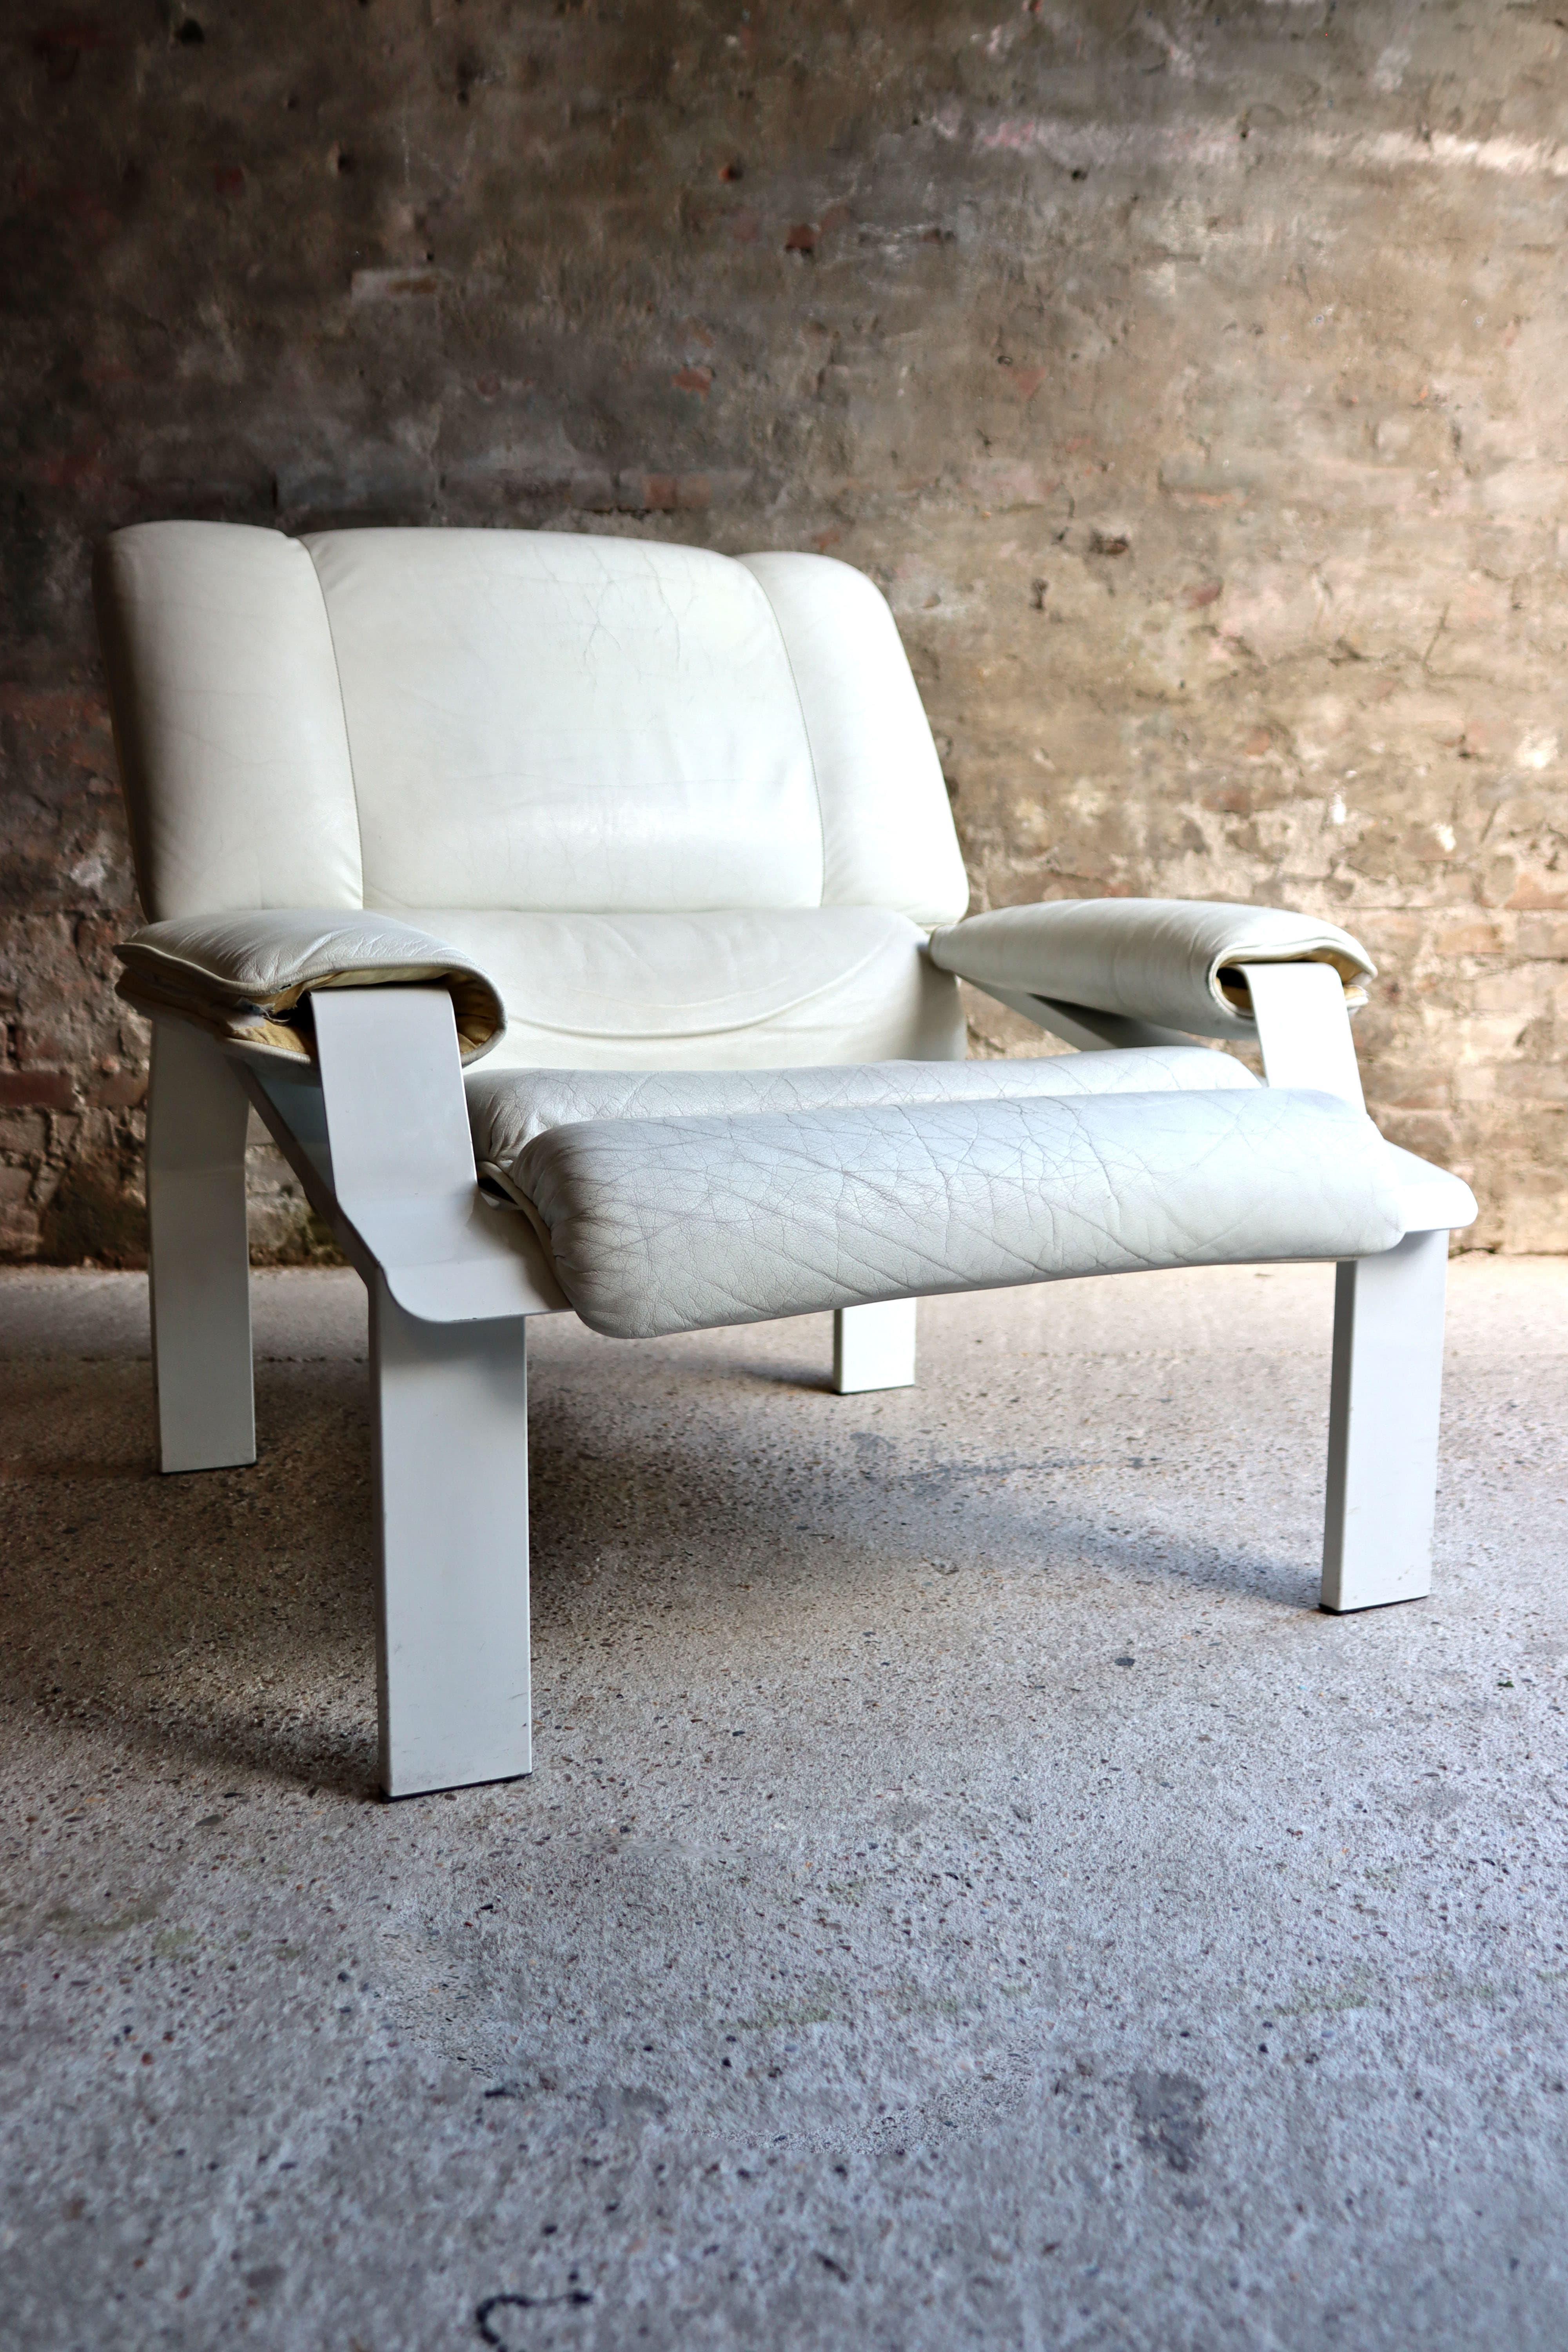 Cette chaise cool s'appelle la chaise LEM et a été conçue par Joe Colombo pour Bieffeplast en 1964. Il est baptisé LEM en raison de sa ressemblance avec un vaisseau spatial ; il a été appelé Lem en l'honneur de Stanislaw Lem, l'auteur du roman